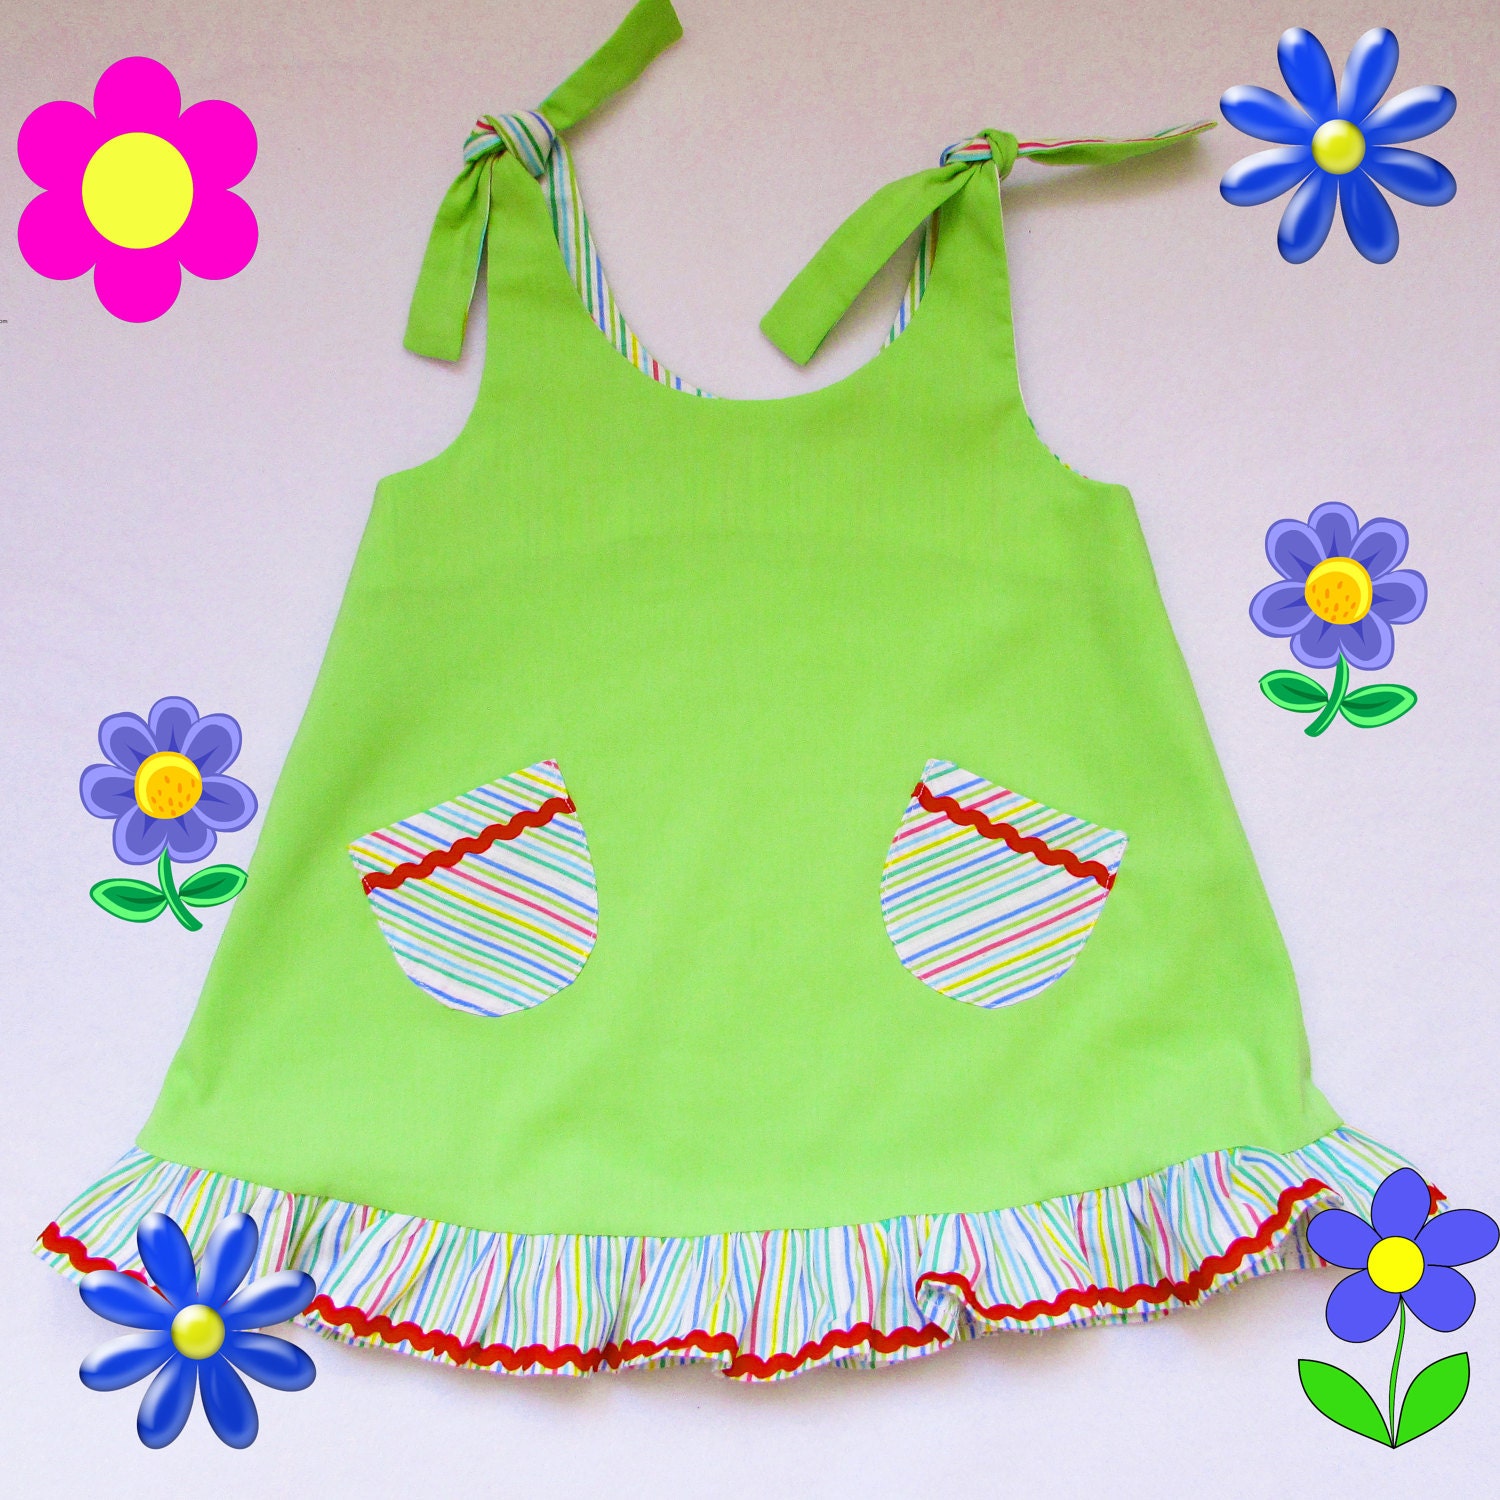 Girl's summer dress dress baby toddler girls sundress | Etsy